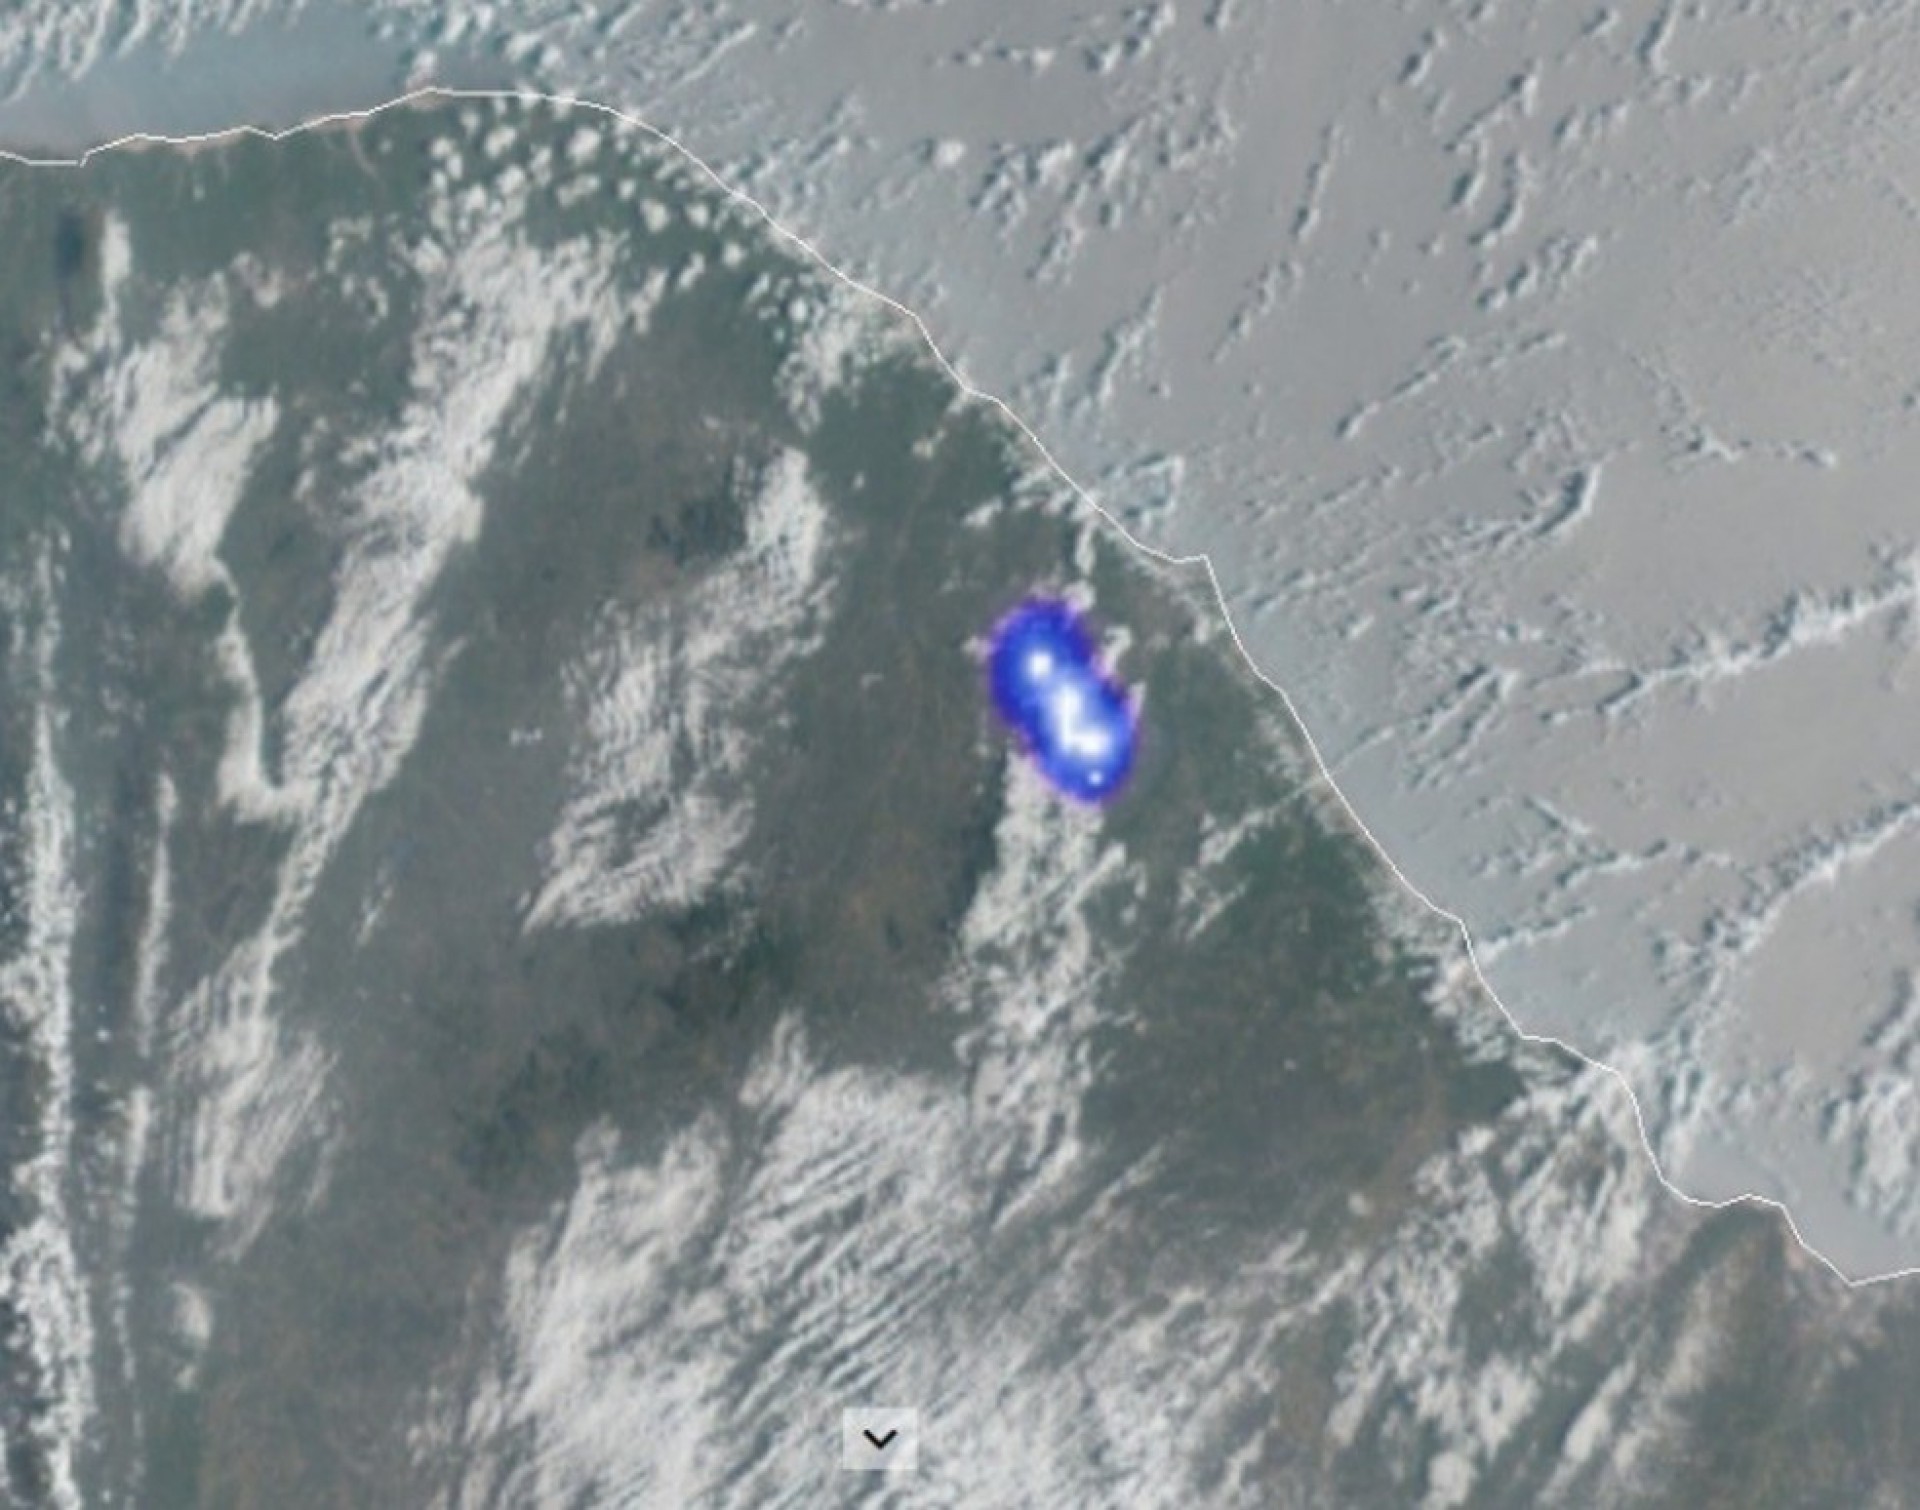 IMAGEM captada do satélite Geo Estacionário Meteorológico mostra ponto luminoso sobre a Região do Maciço de Baturité (Foto: REPRODUÇÃO)